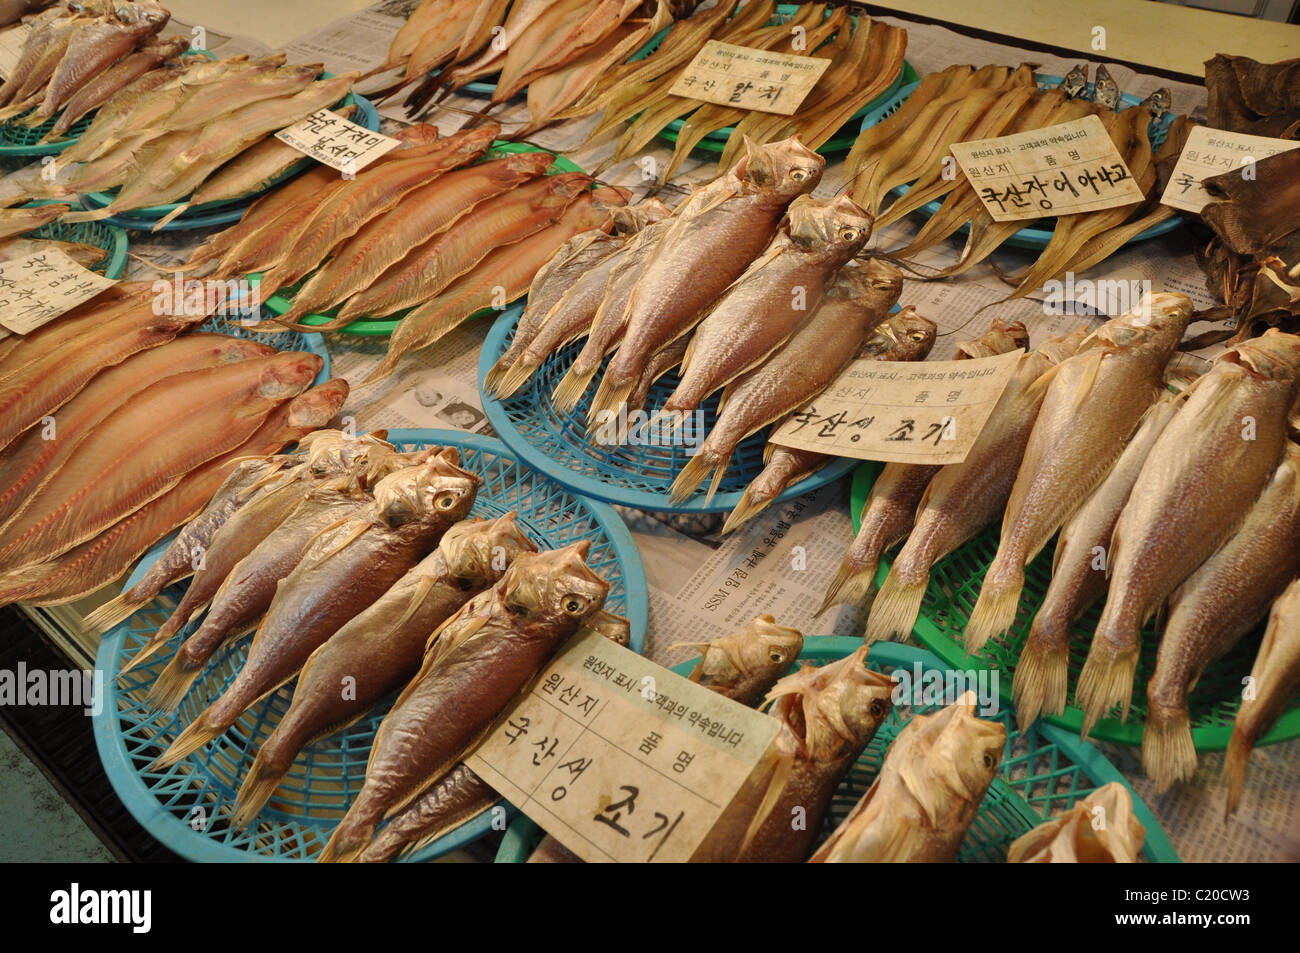 Marché aux poissons de Jagalchi, Busan, Corée du Sud Banque D'Images